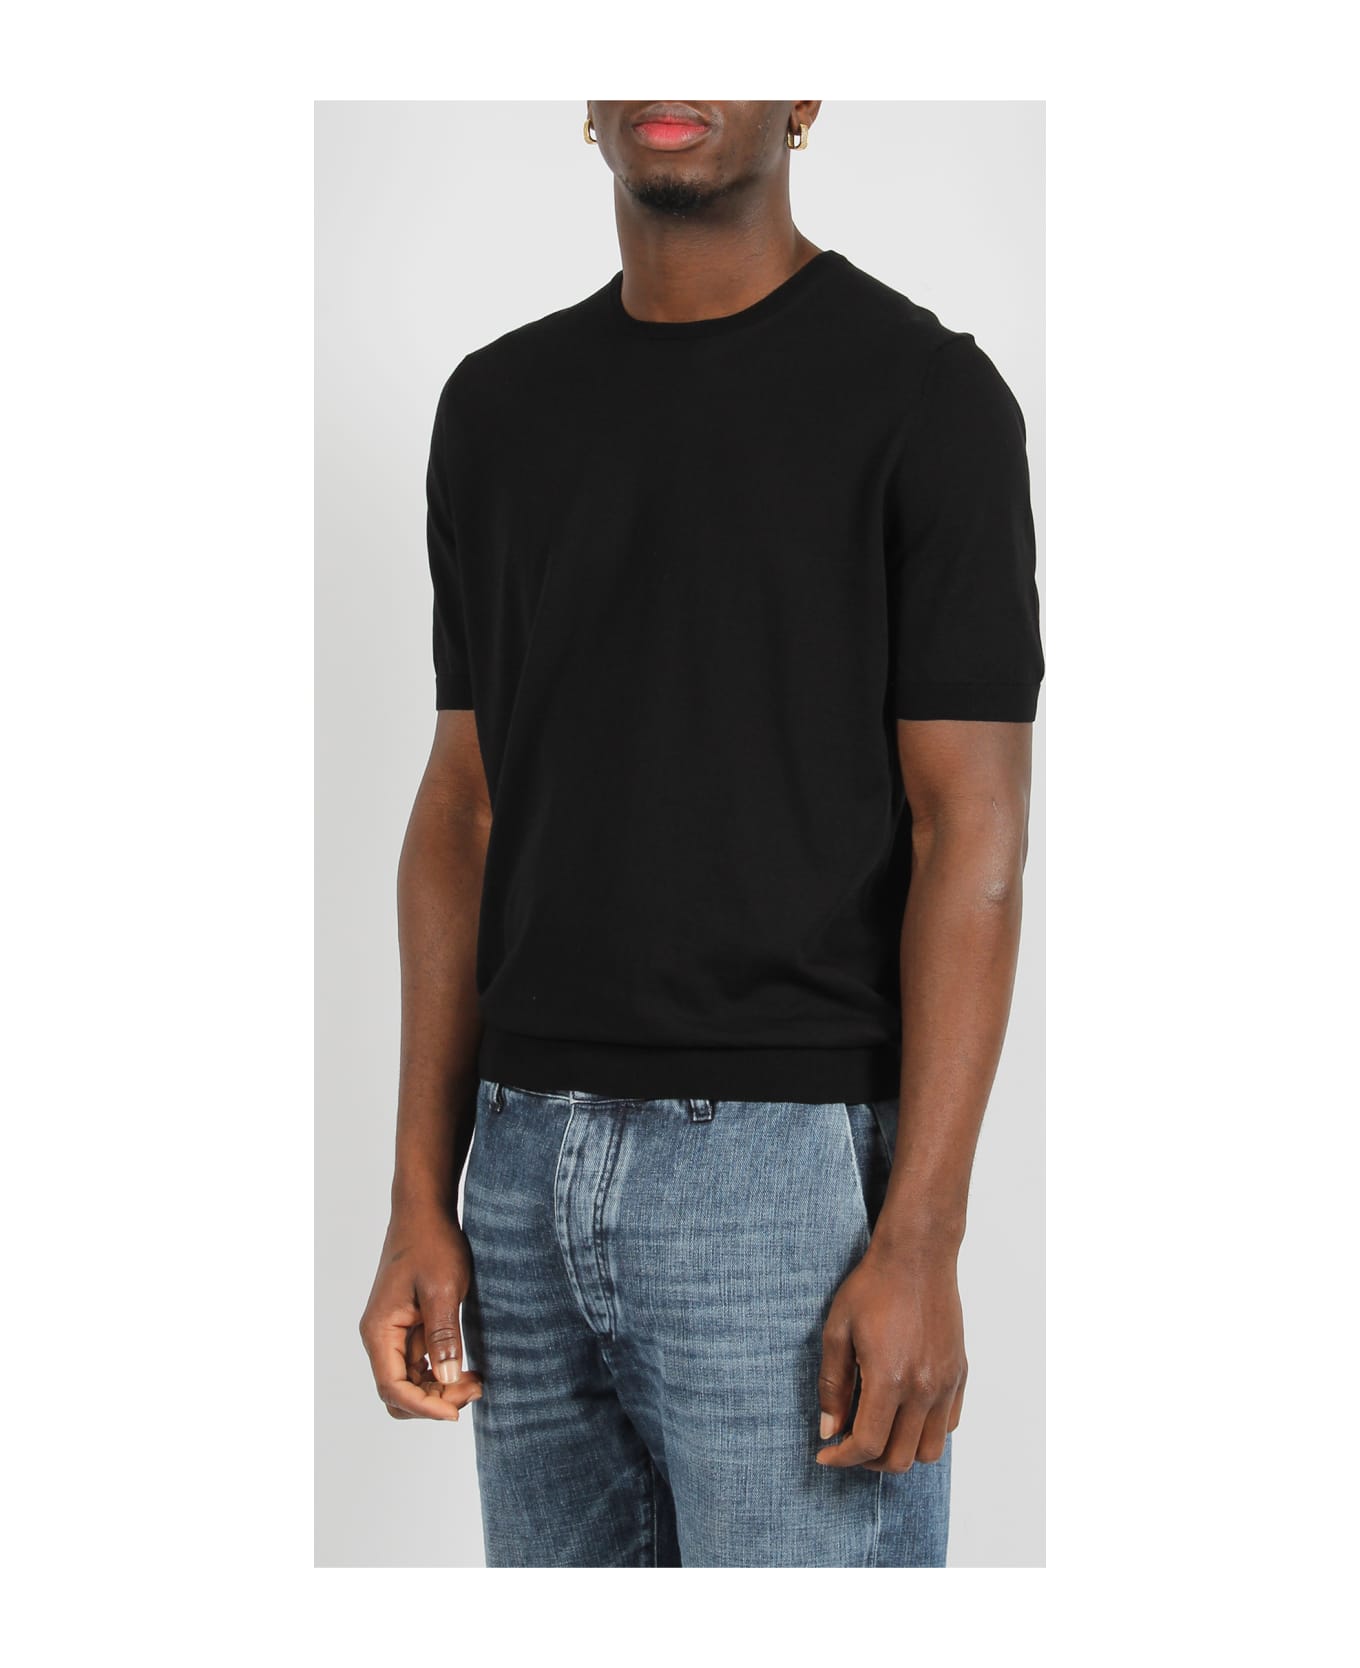 Tagliatore Cotton Knit T-shirt - Black